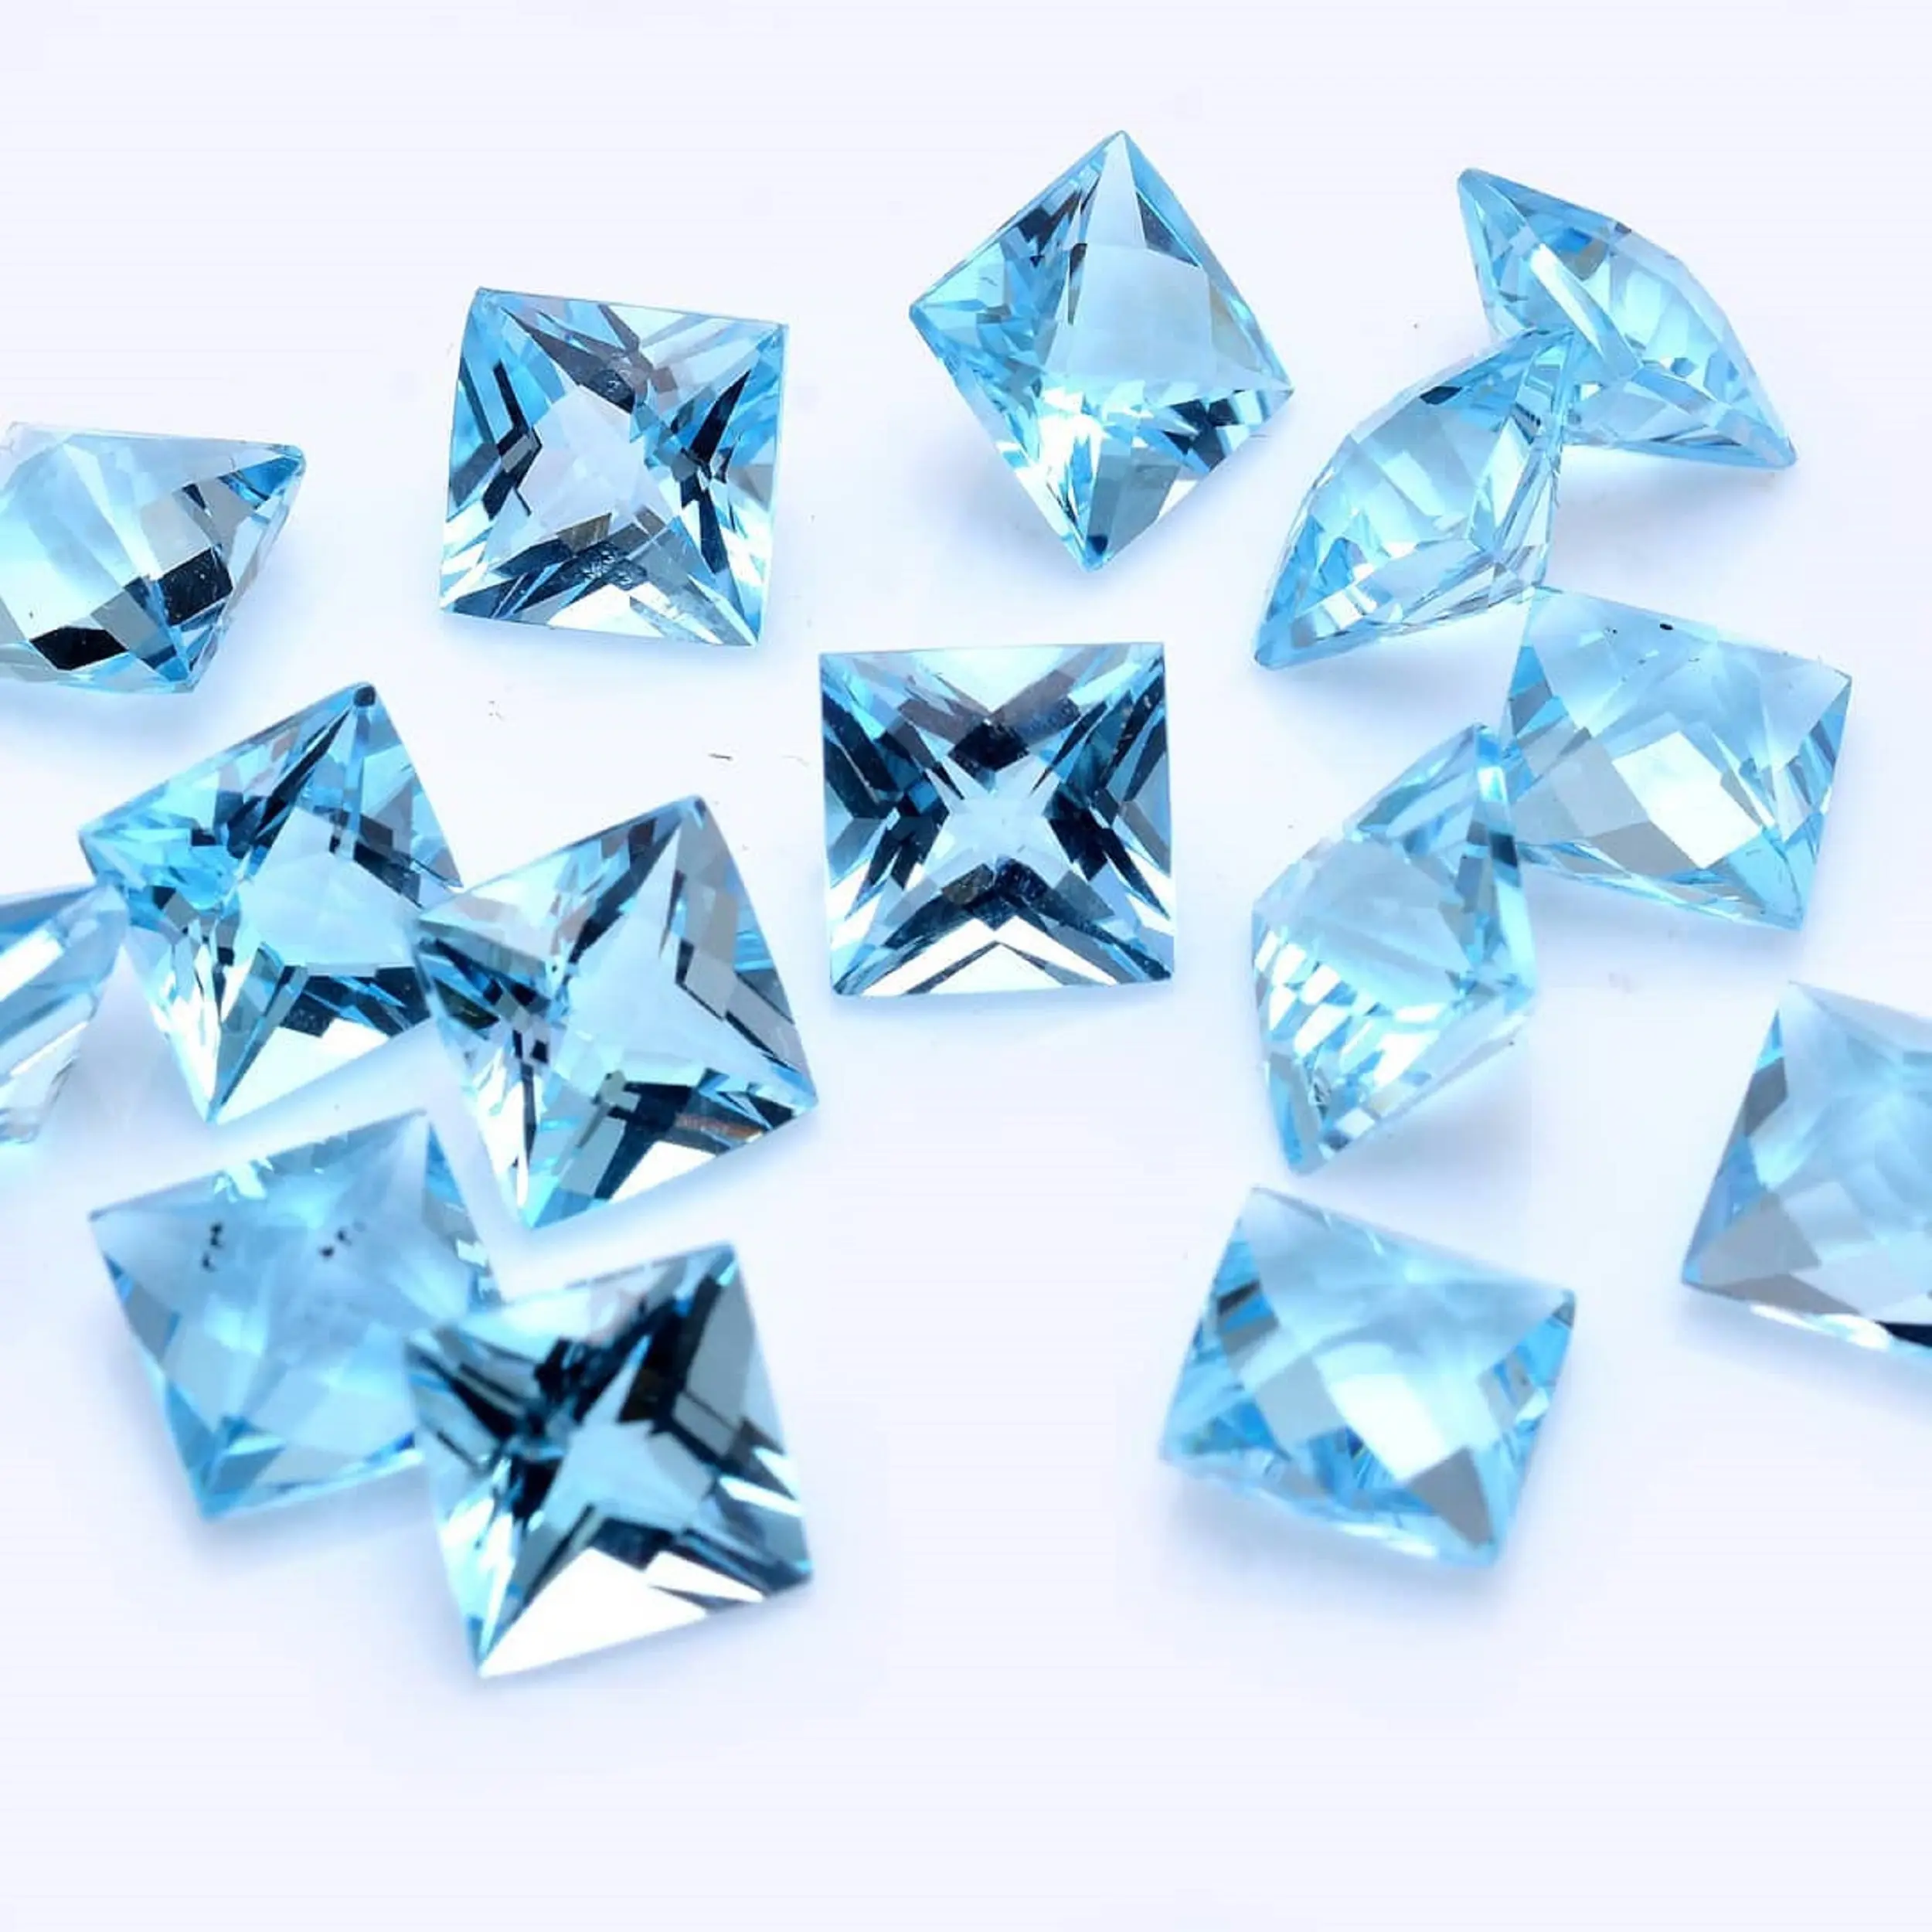 Лучшая цена квадратного кроя принцессы 5 мм синий топаз Высококачественный Свободный драгоценный камень от индийского поставщика